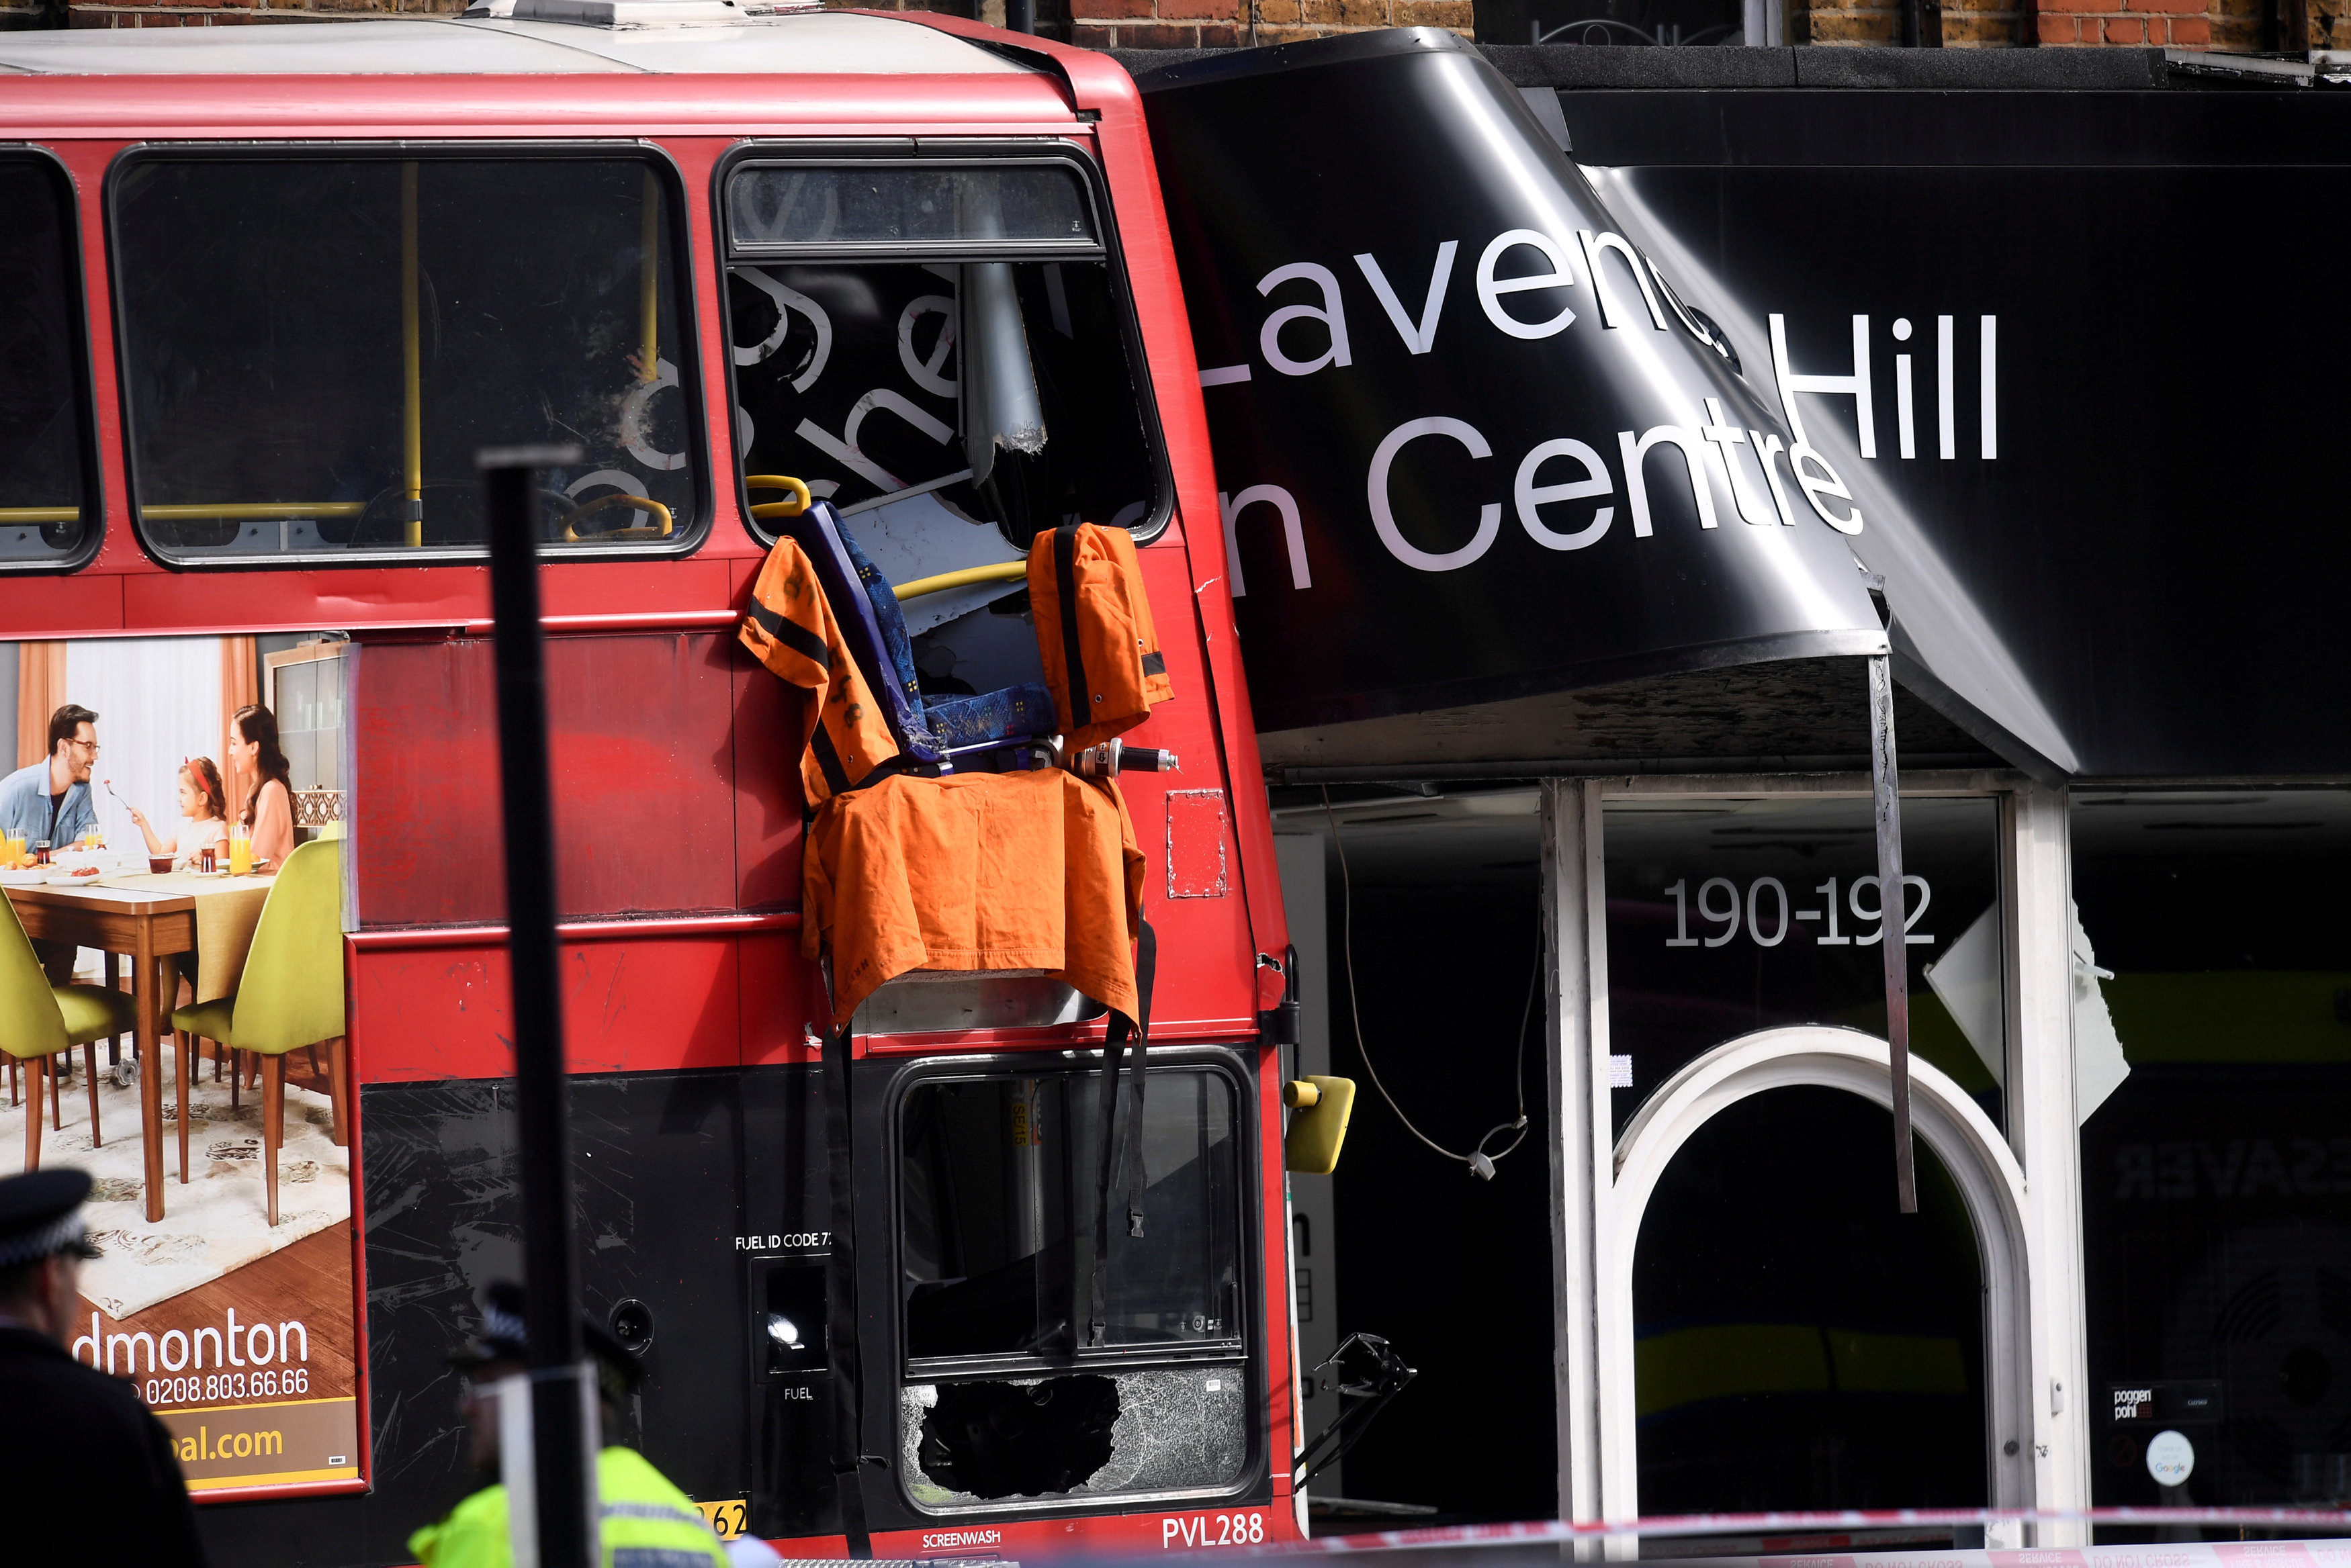 واجهة مبنى فى لندن تتحطم بعد اصطدام حافلة بها